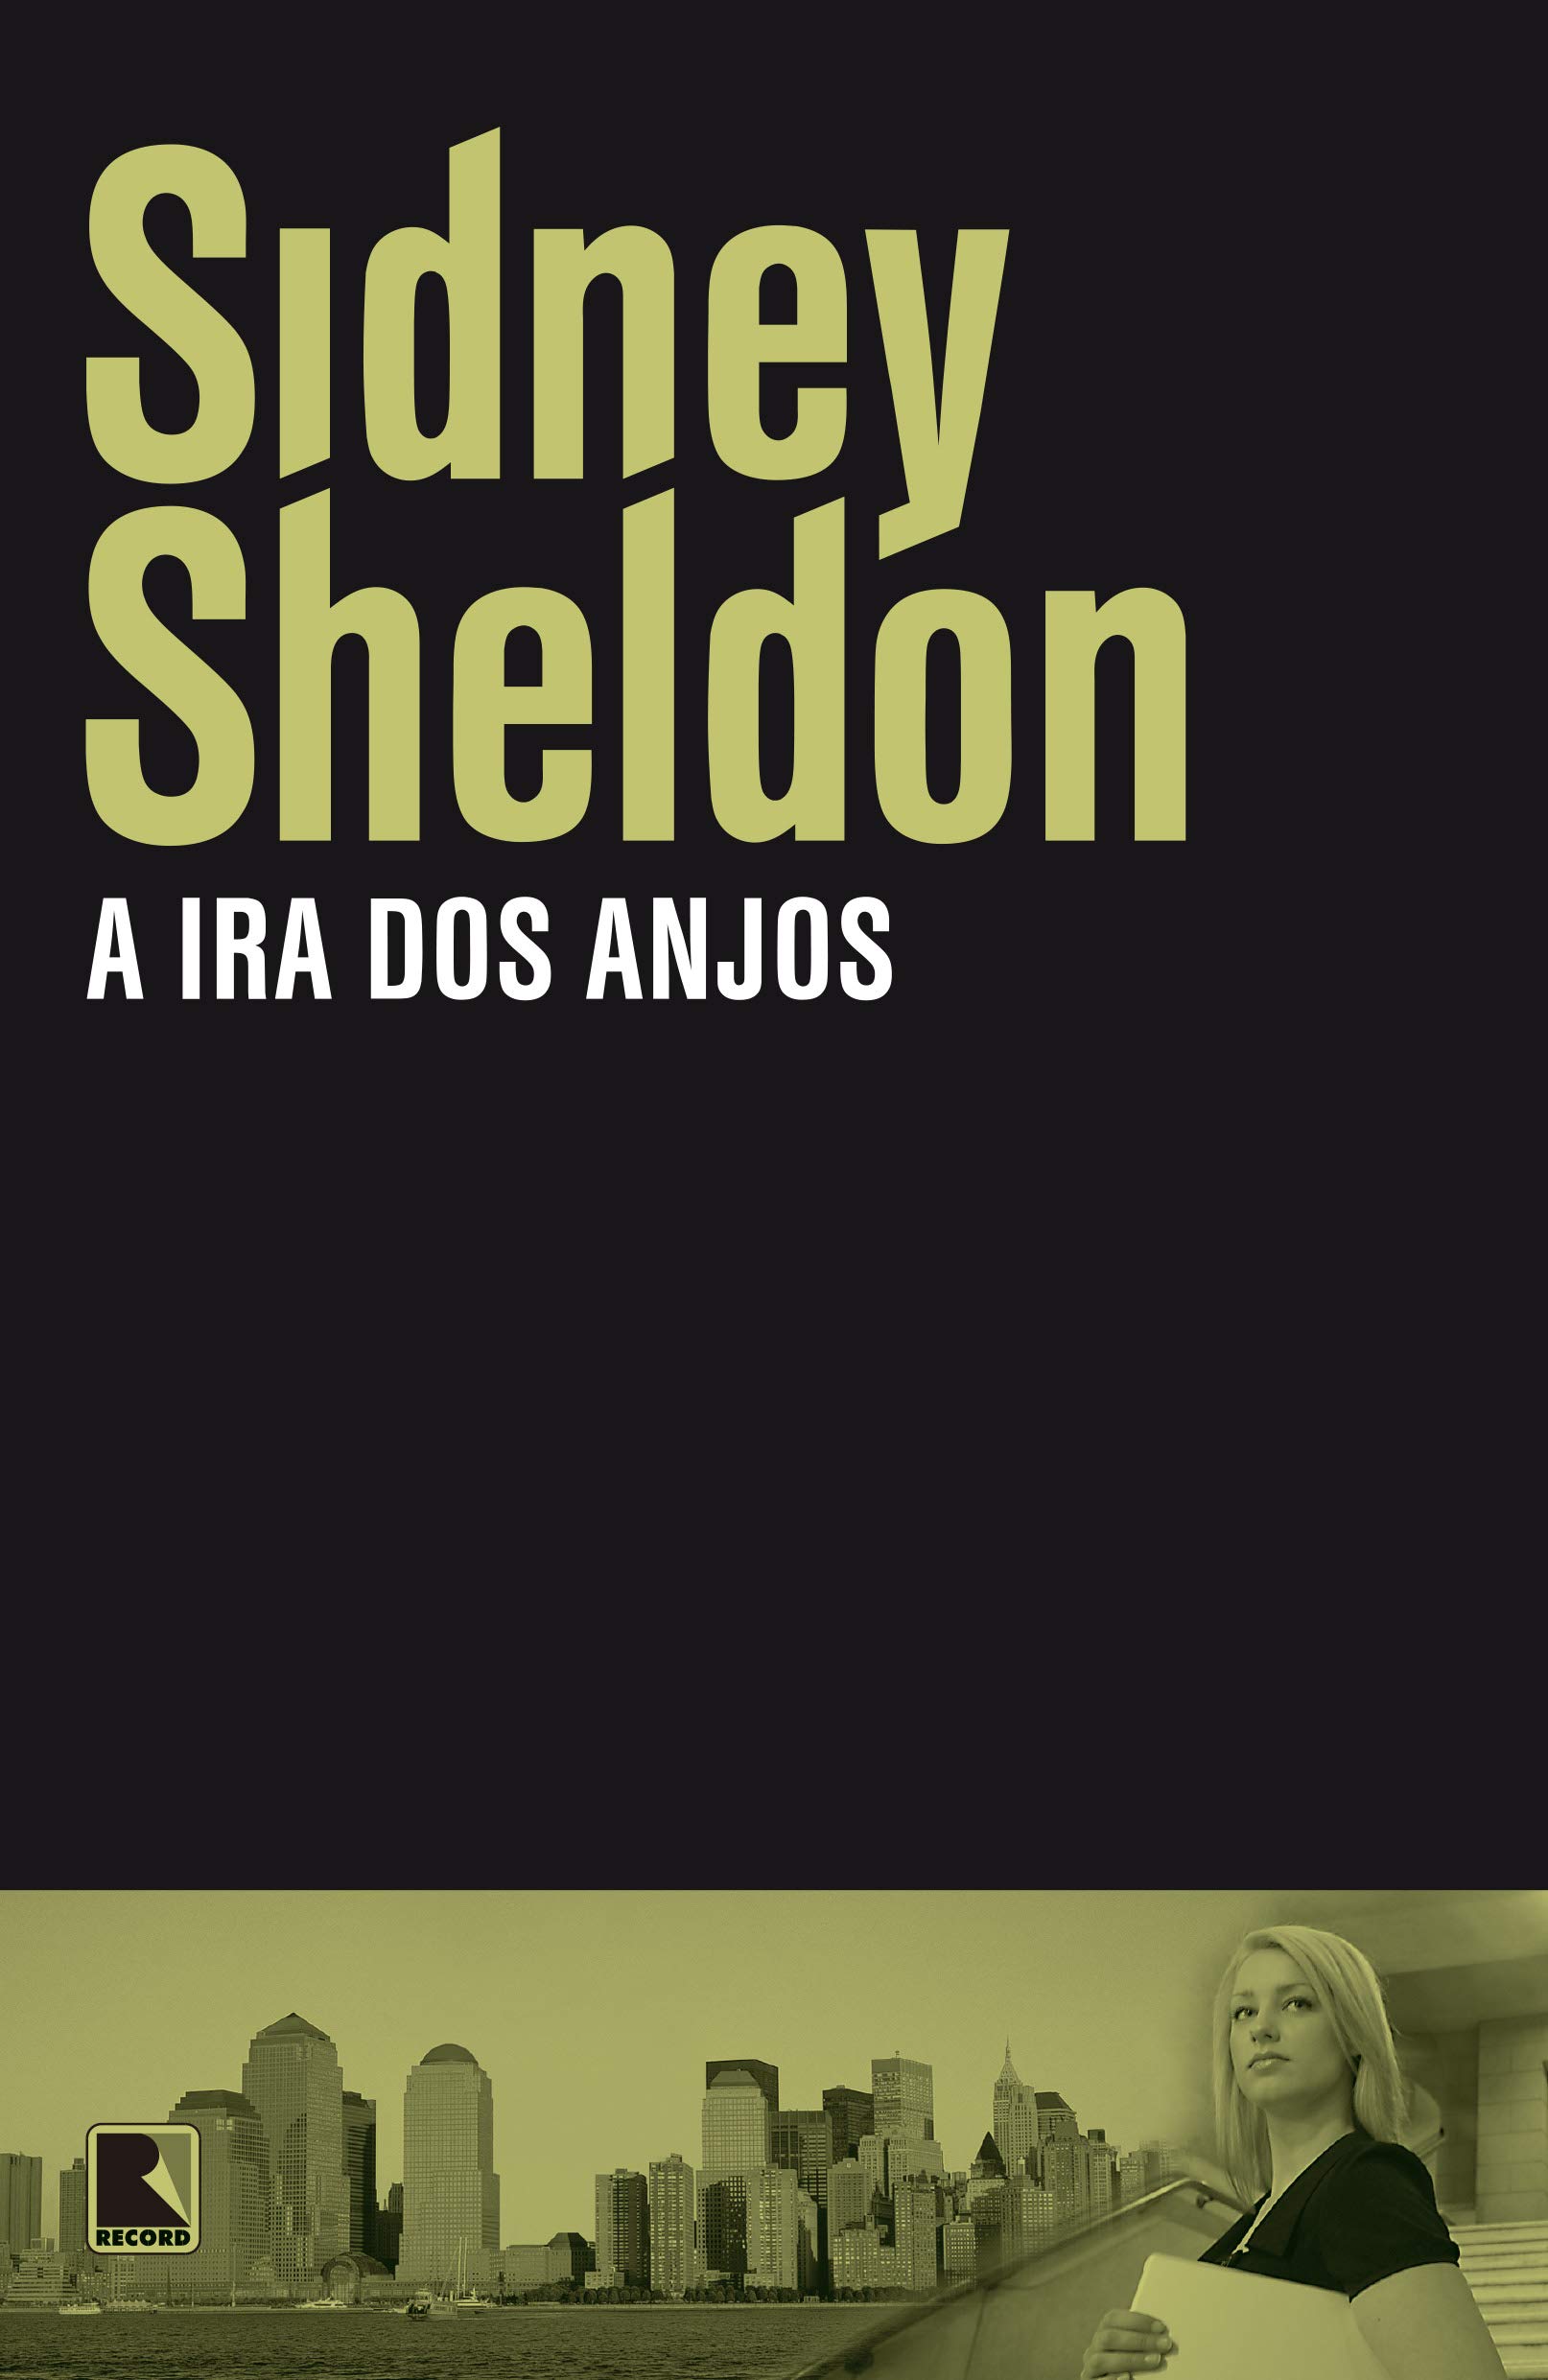 Sidney Sheldon: A Ira dos Anjos (Paperback, Português language, 2012, Record)